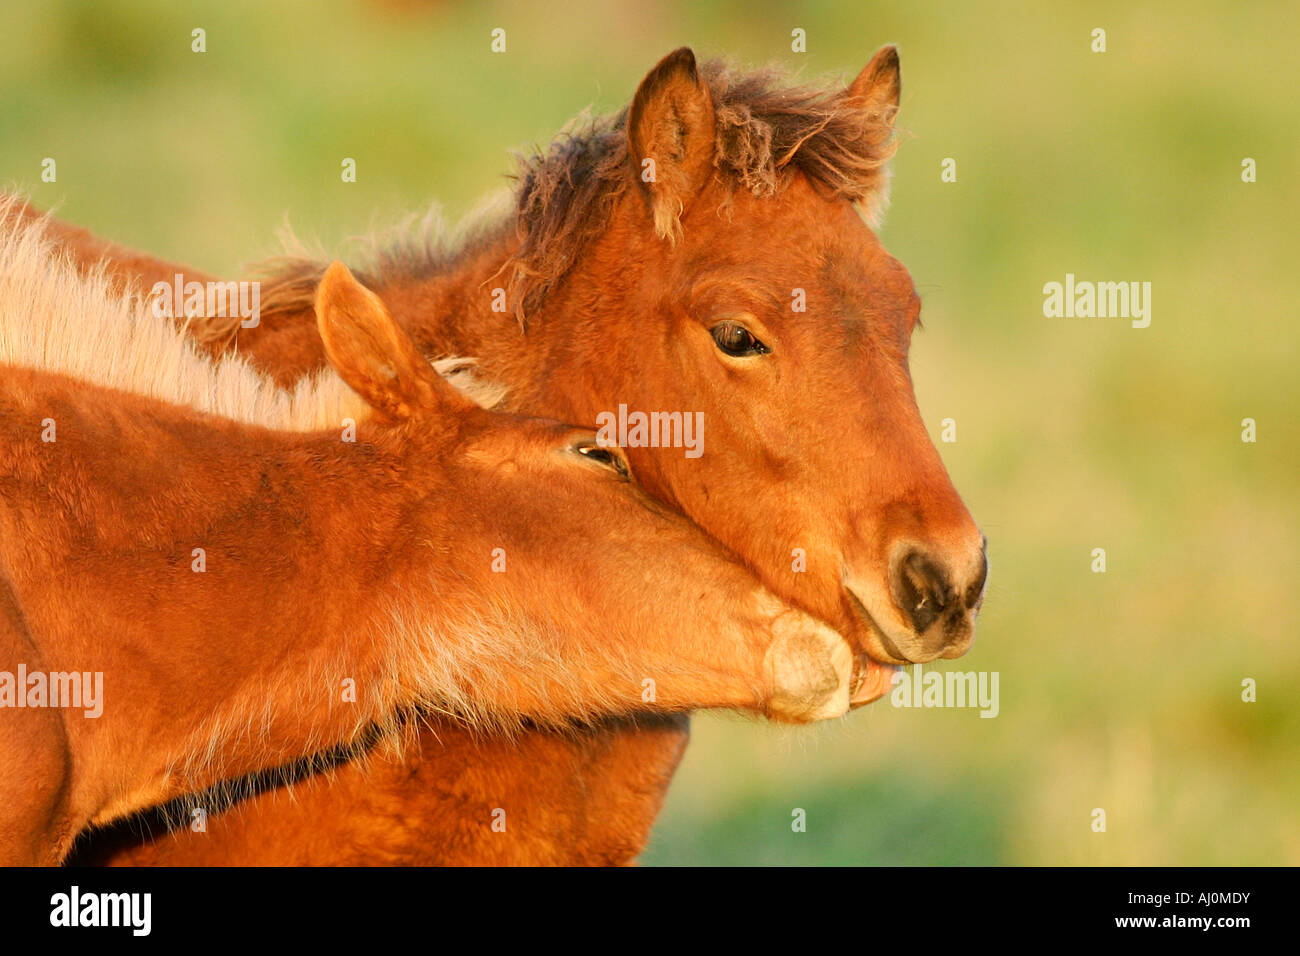 icelandic horse islandpferd Stock Photo